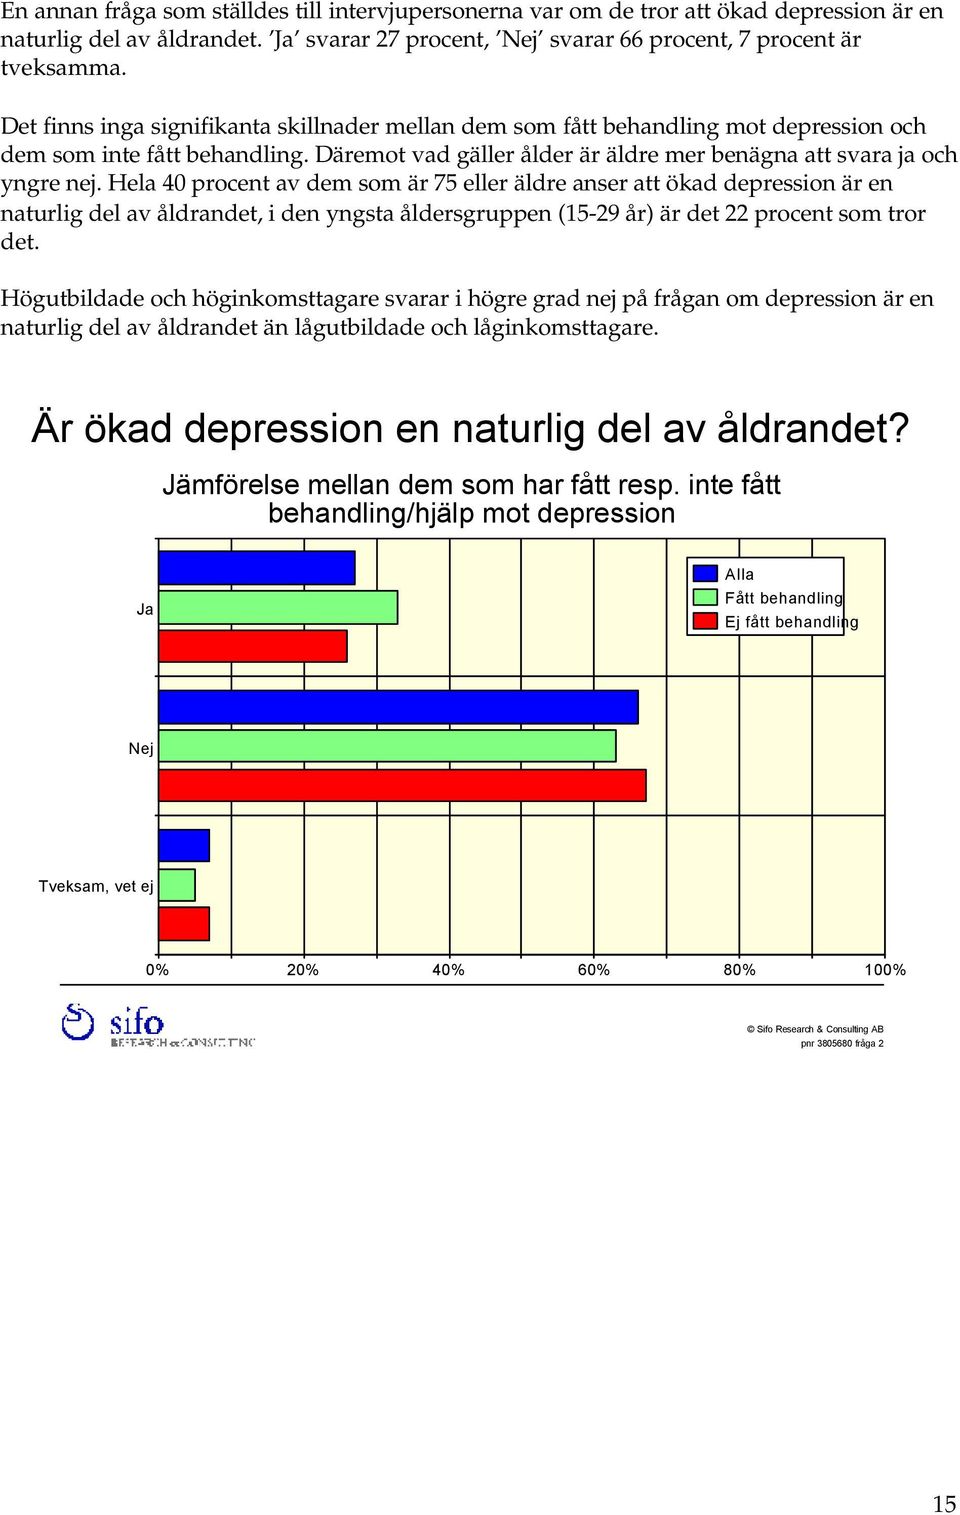 Hela 40 procent av dem som är 75 eller äldre anser att ökad depression är en naturlig del av åldrandet, i den yngsta åldersgruppen (15-29 år) är det 22 procent som tror det.